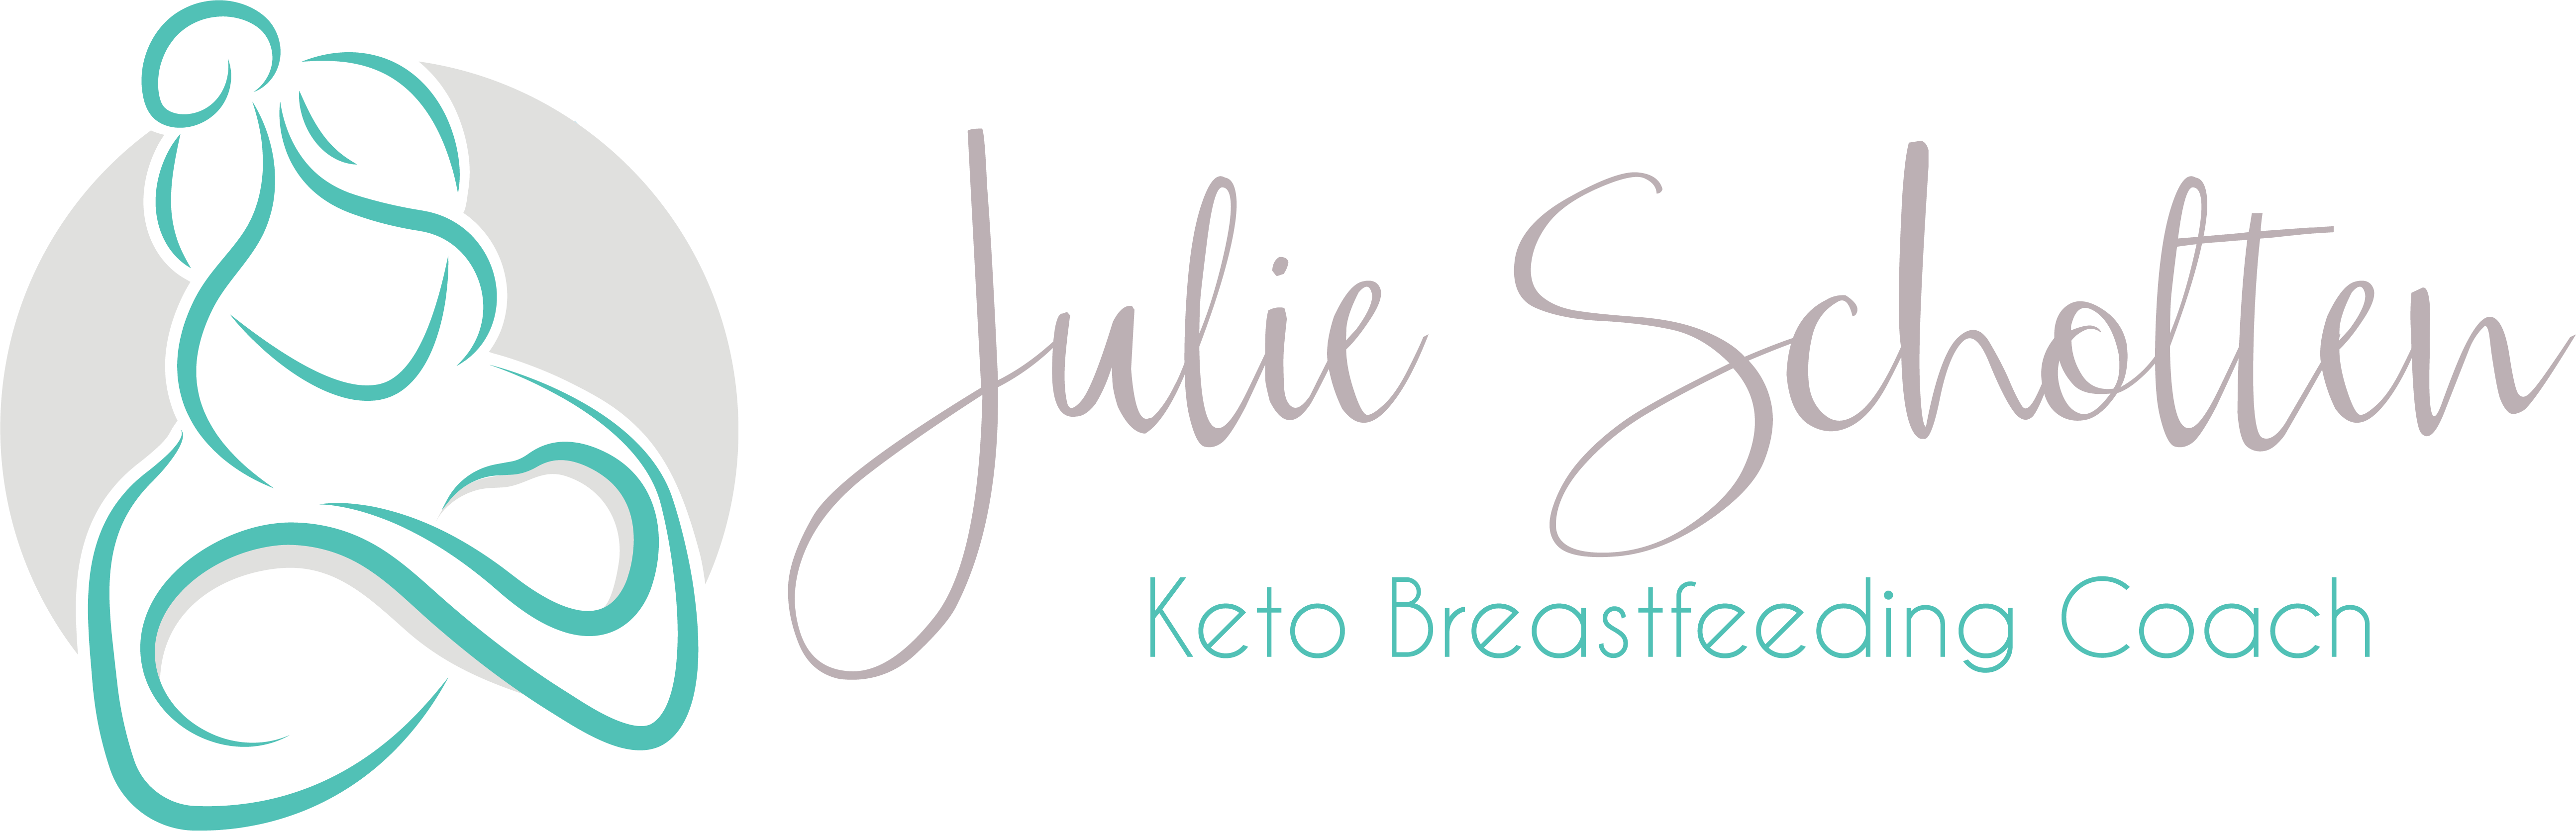 Keto & Breastfeeding Coach